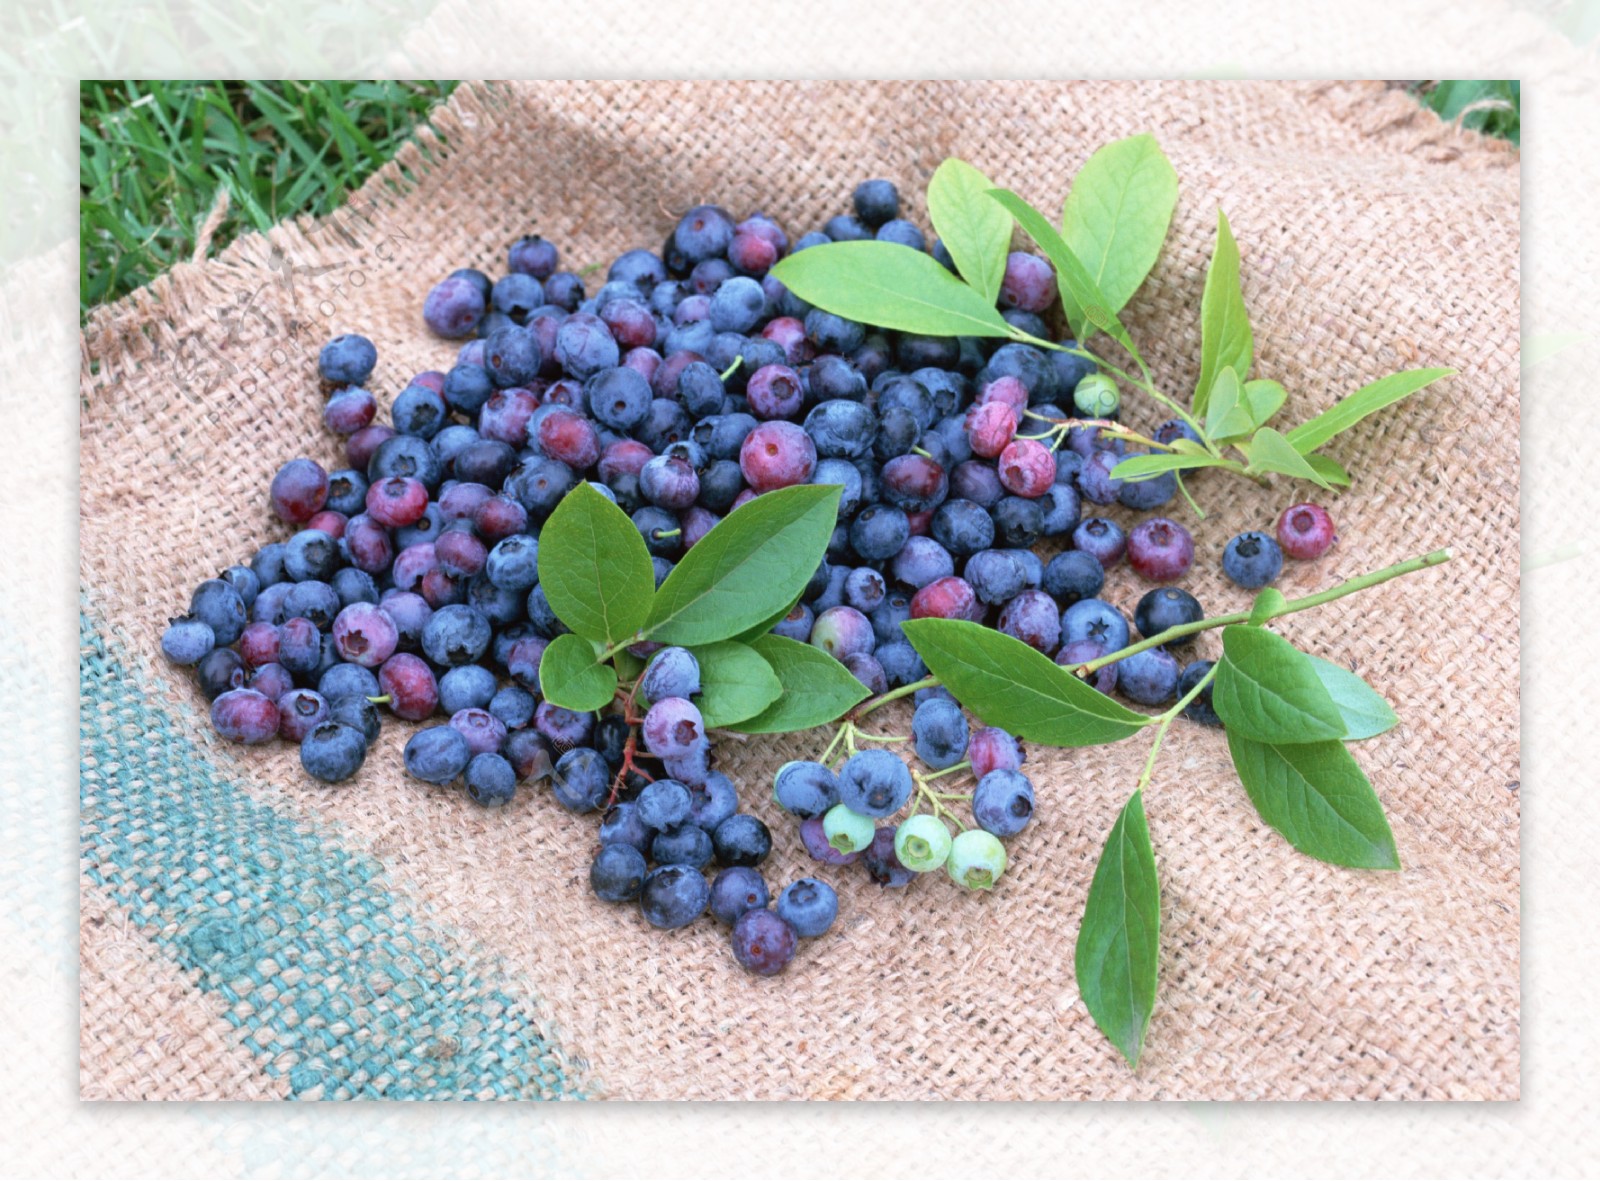 麻袋上的蓝莓果